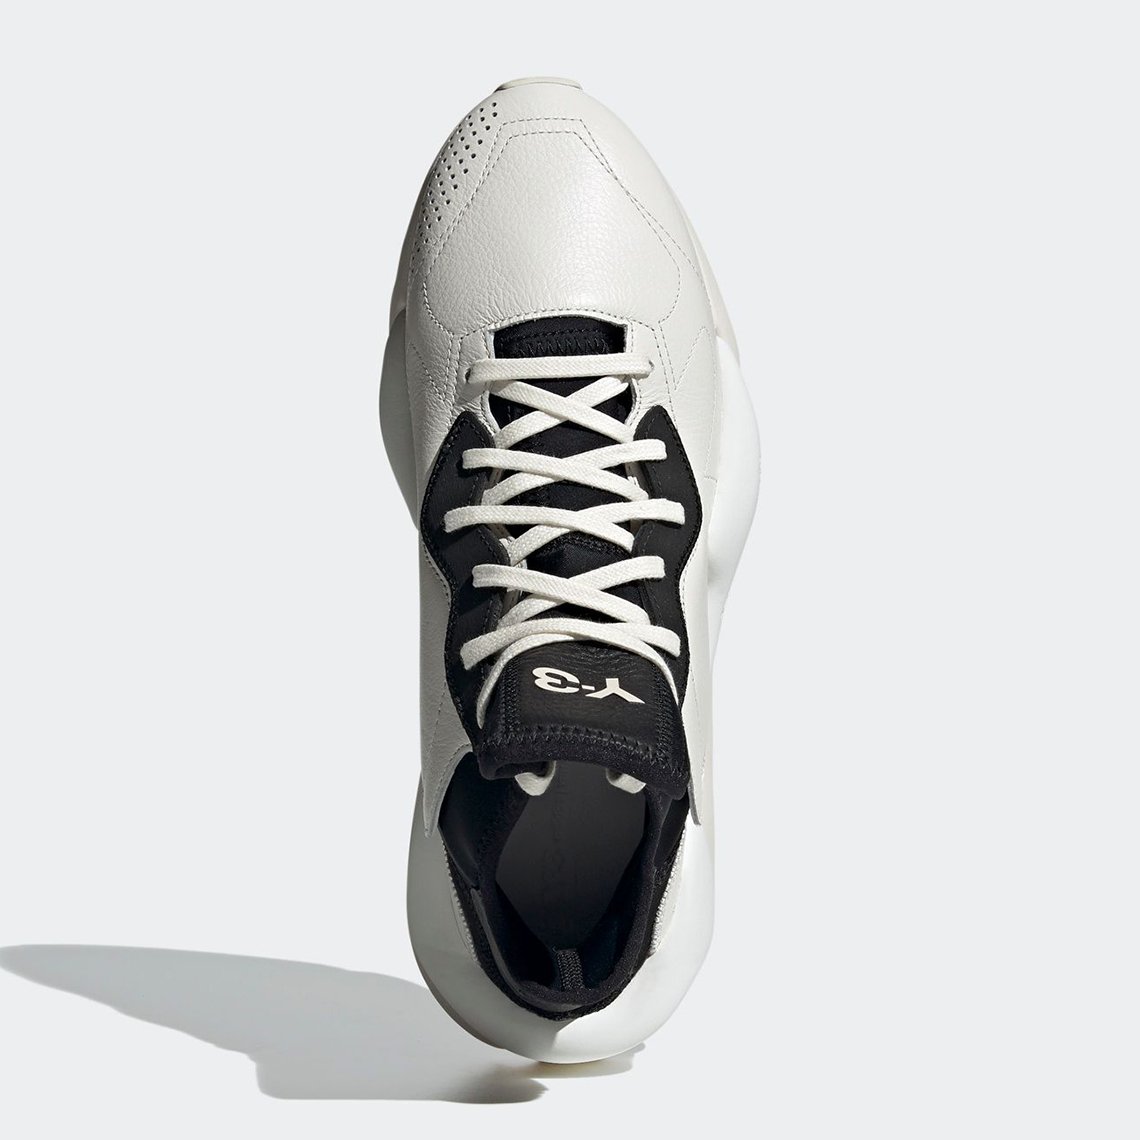 Adidas Y 3 Kaiwa White Leather Black Fz4326 7